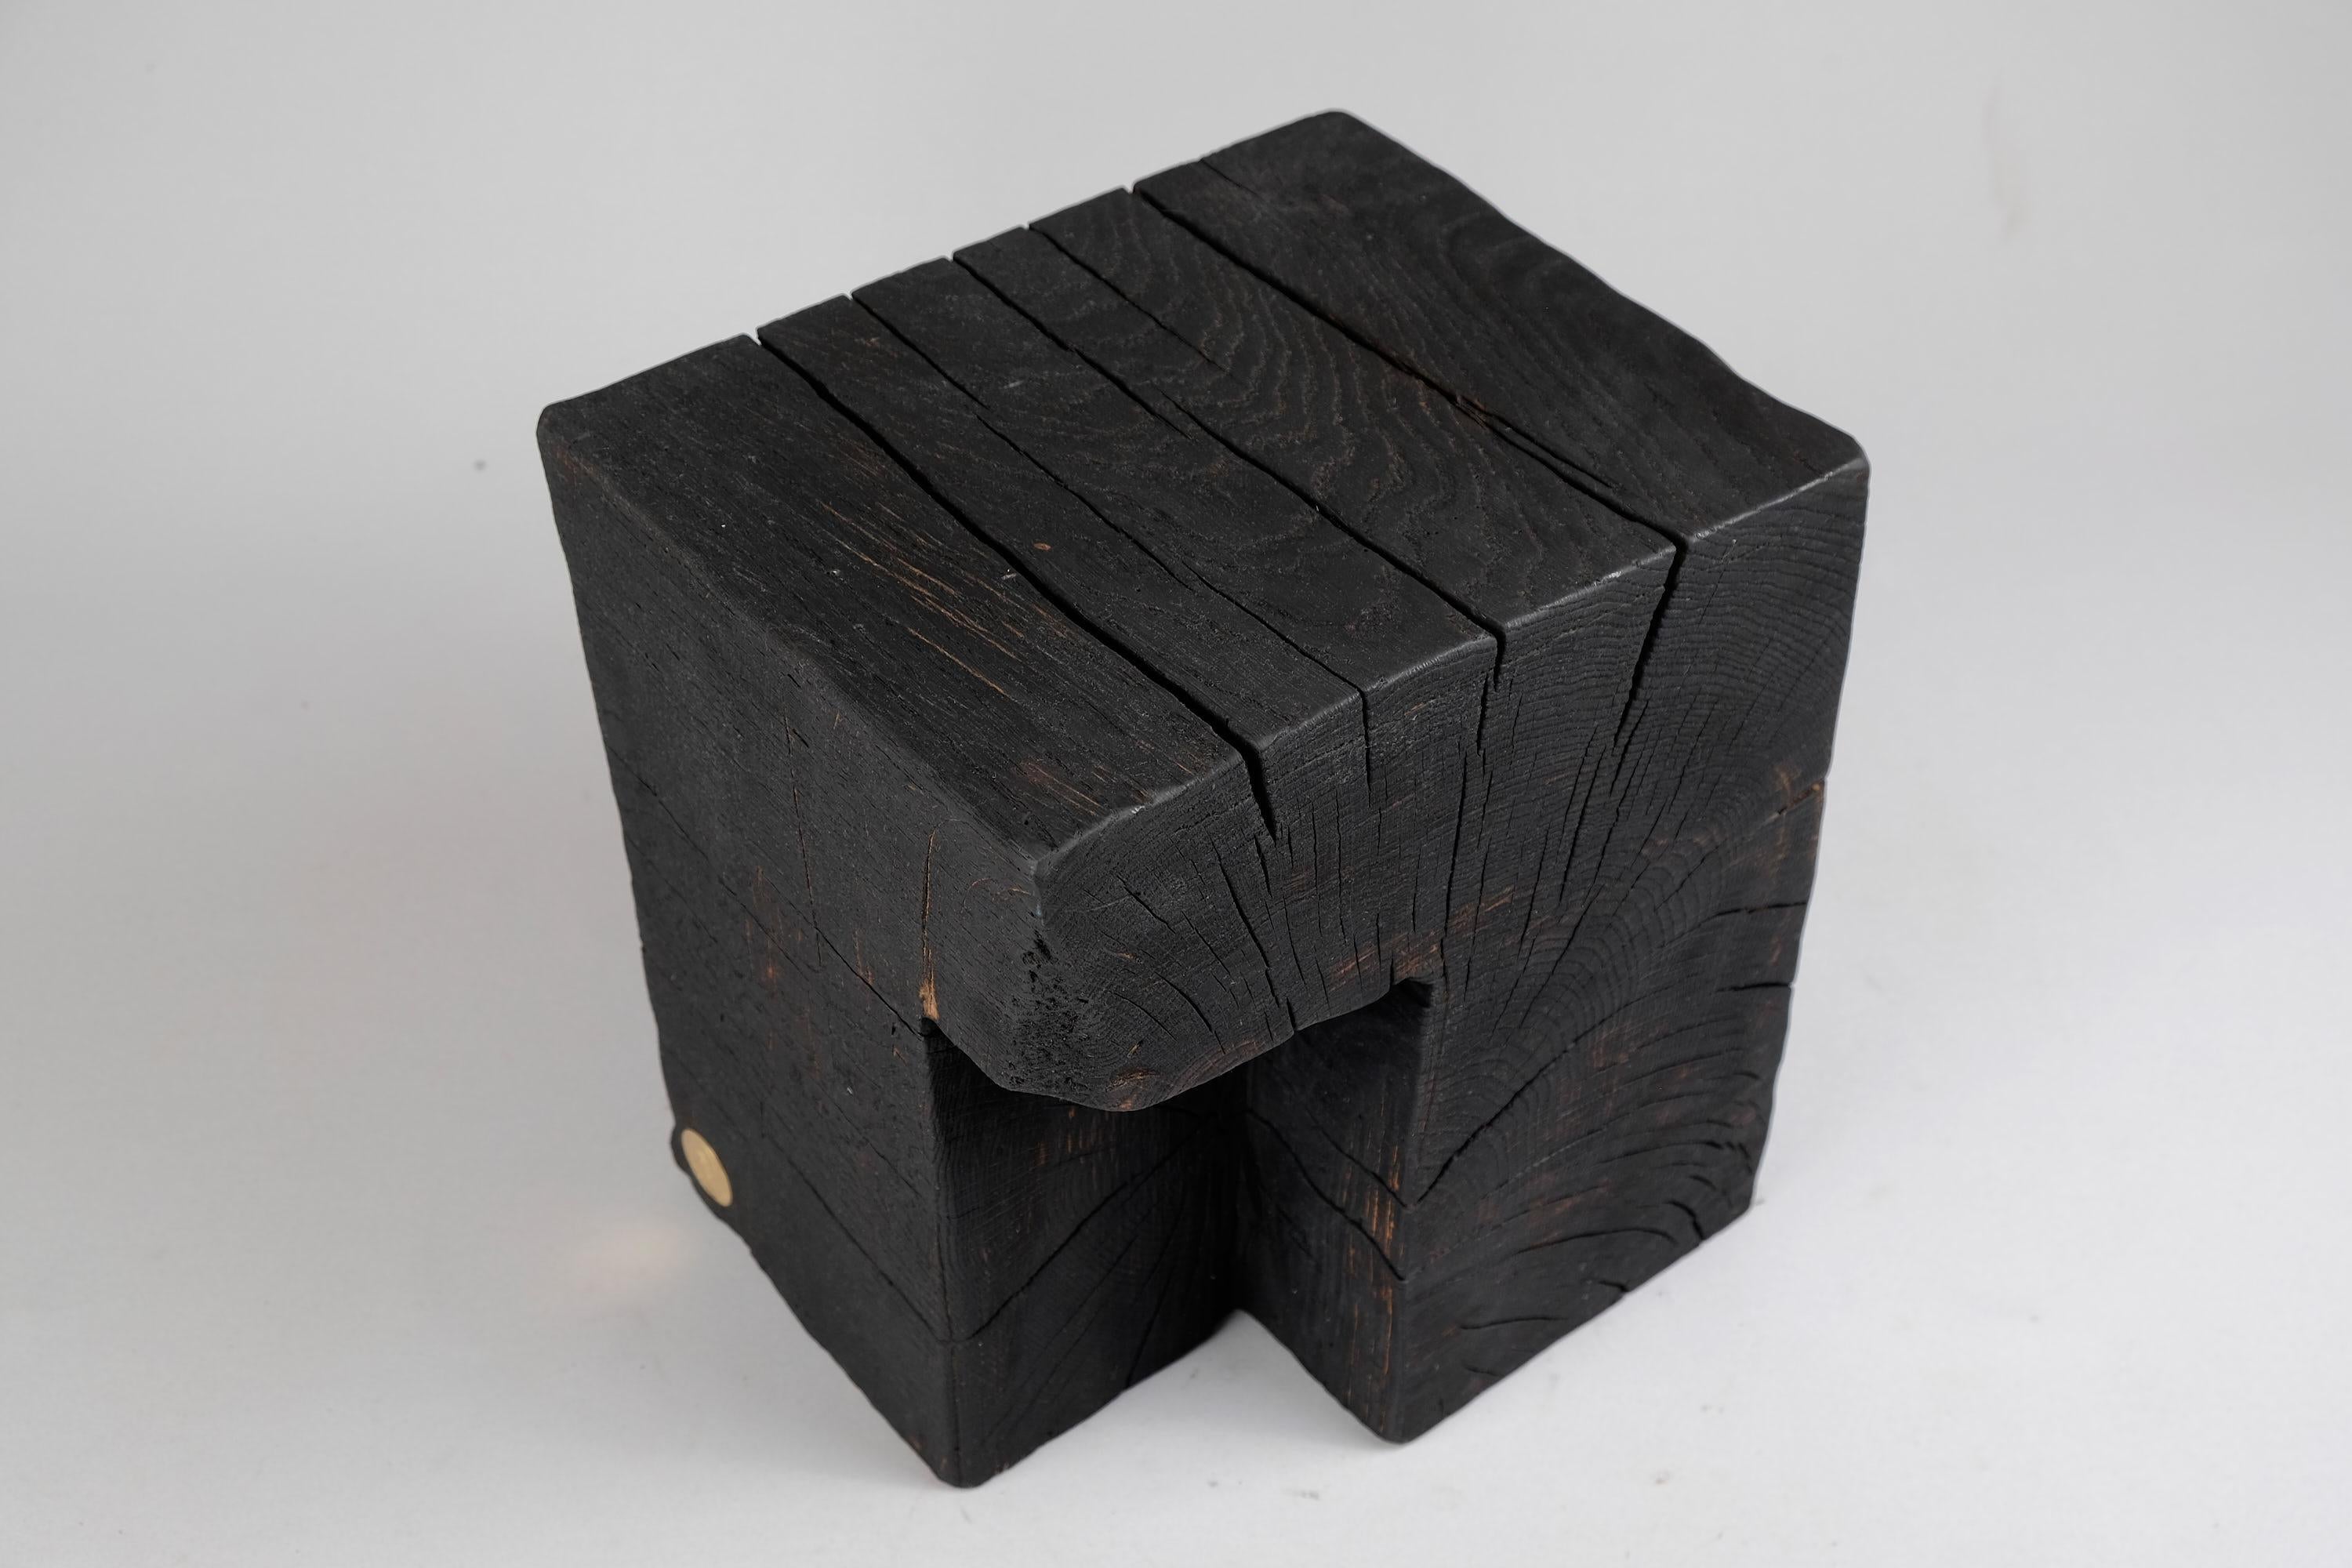 Table d'appoint rustique contemporaine en bois sculpté à la tronçonneuse. Sculpté dans une seule pièce de bois et protégé par des huiles de la plus haute qualité, il est durable pour des générations. Un tel design unique fait à la main mettra en